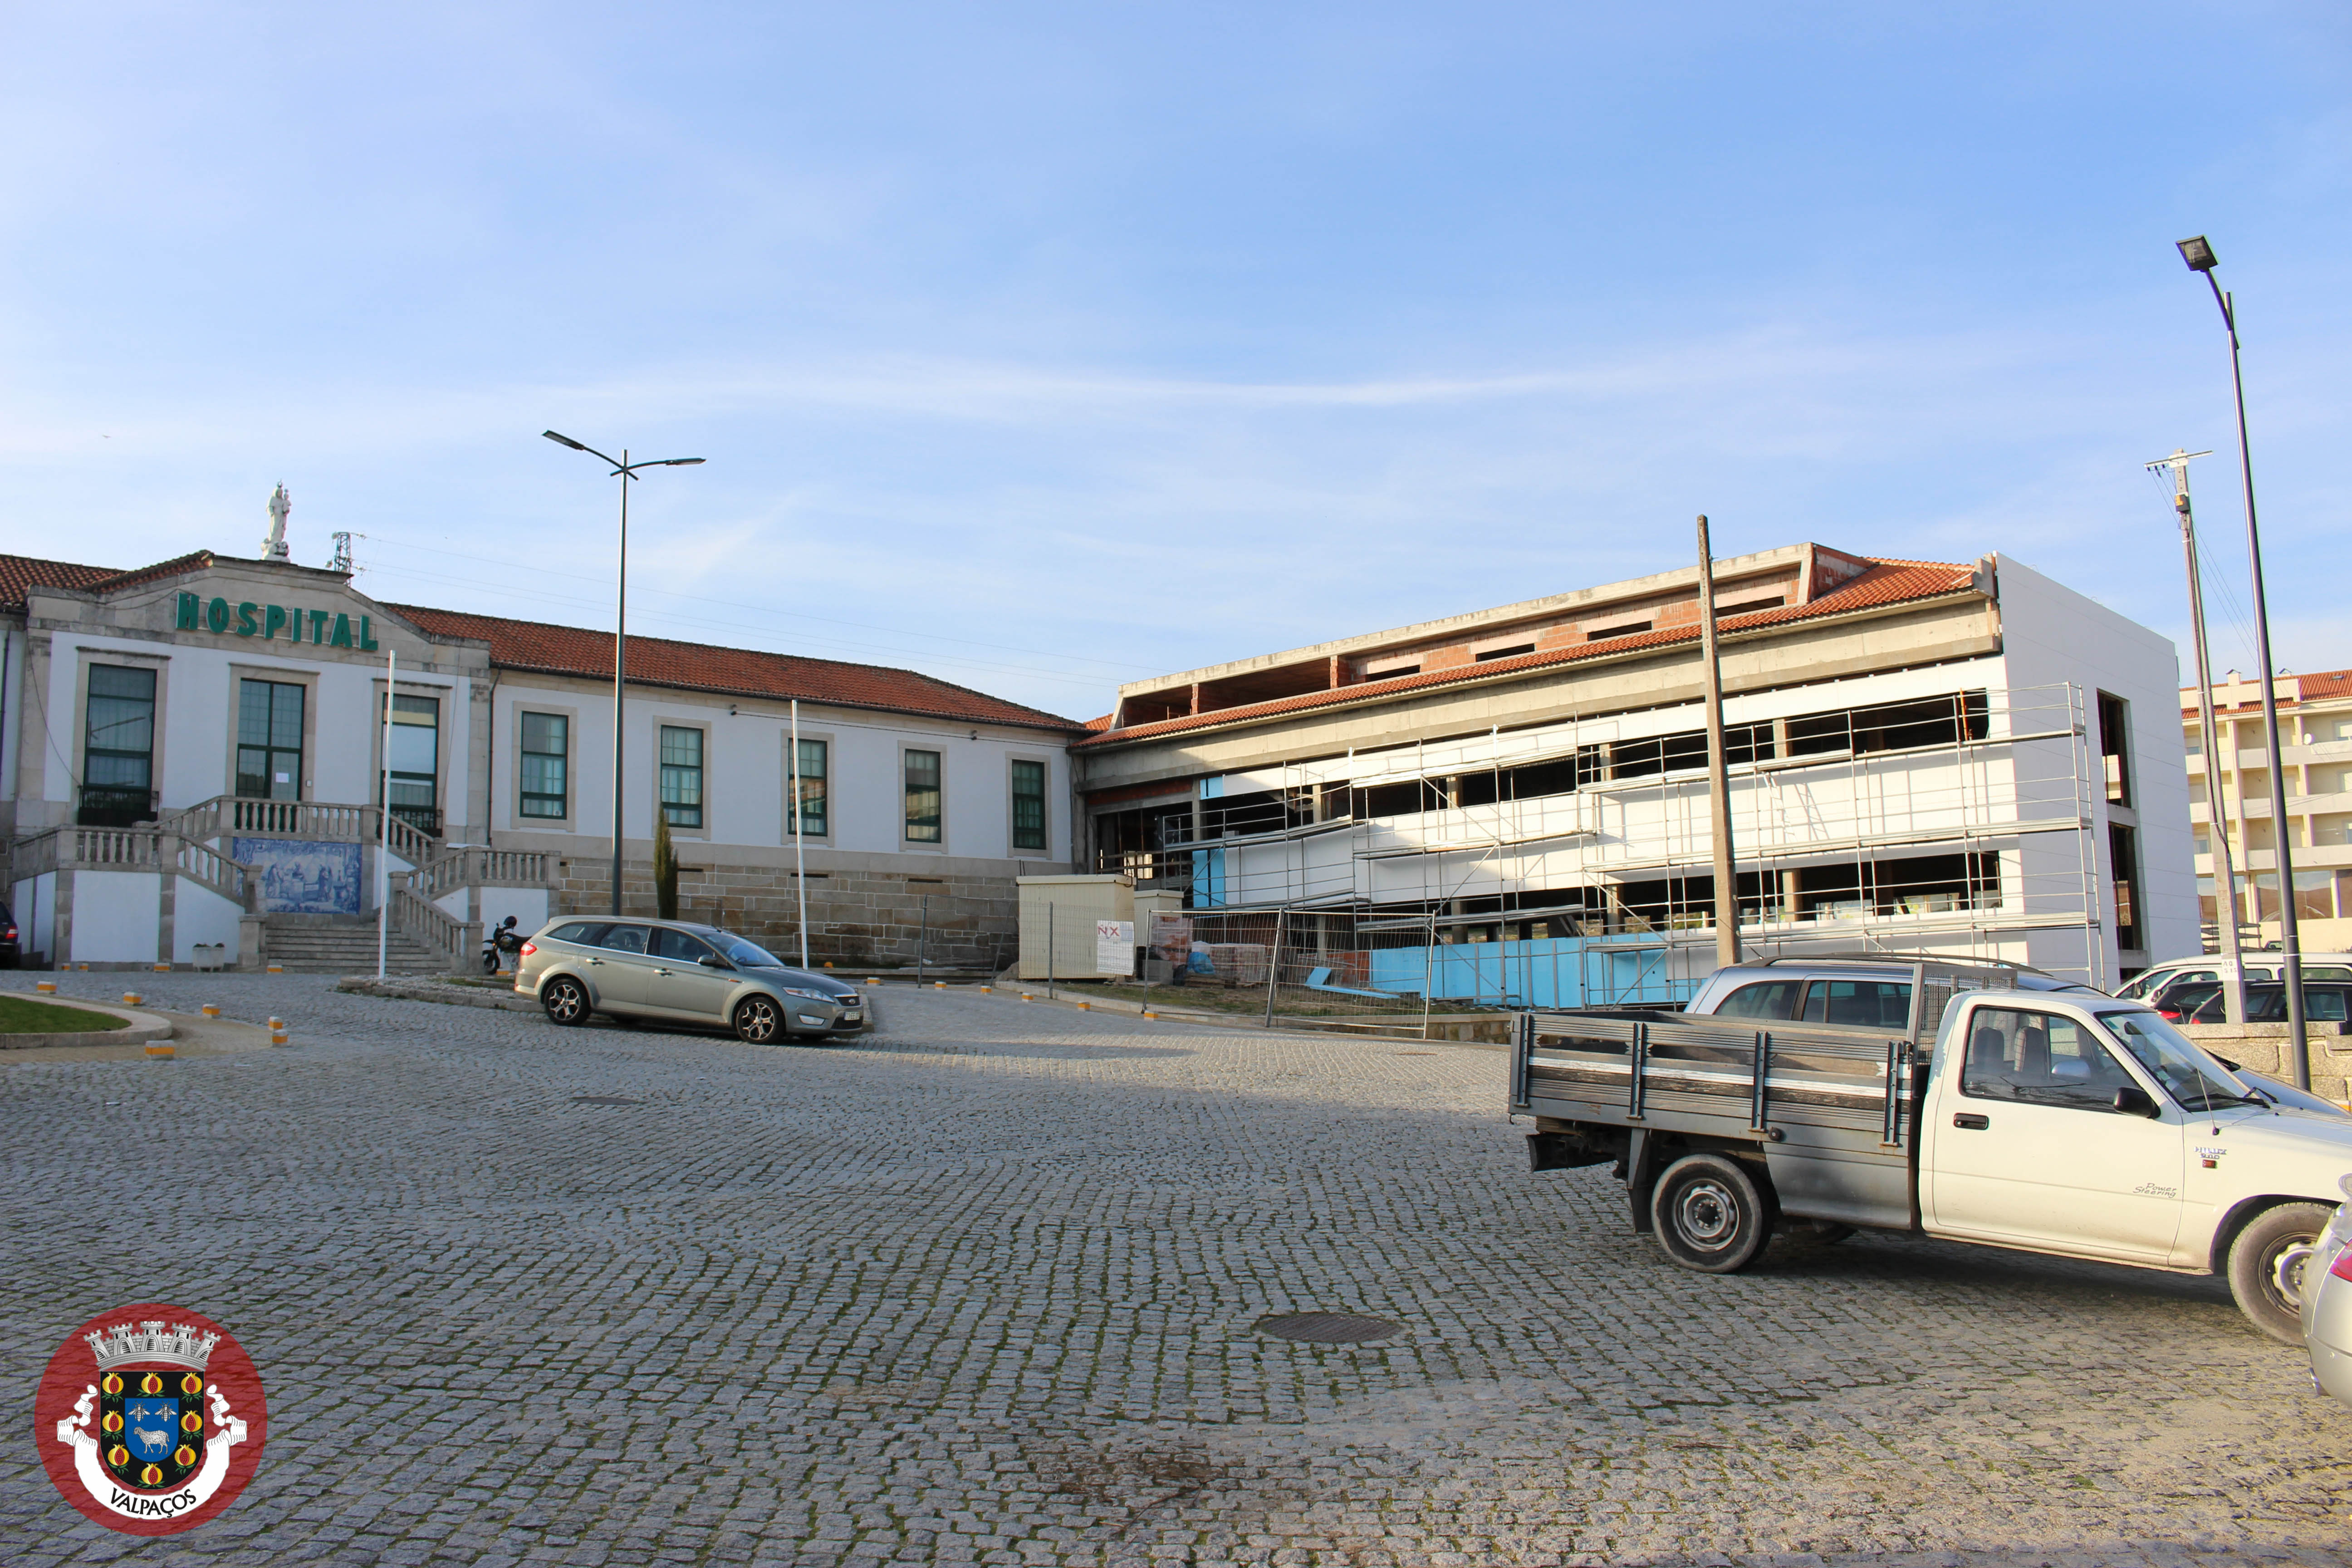 6 anos depois do encerramento, foi lançado um concurso público para remodelar e ampliar o hospital de Valpaços